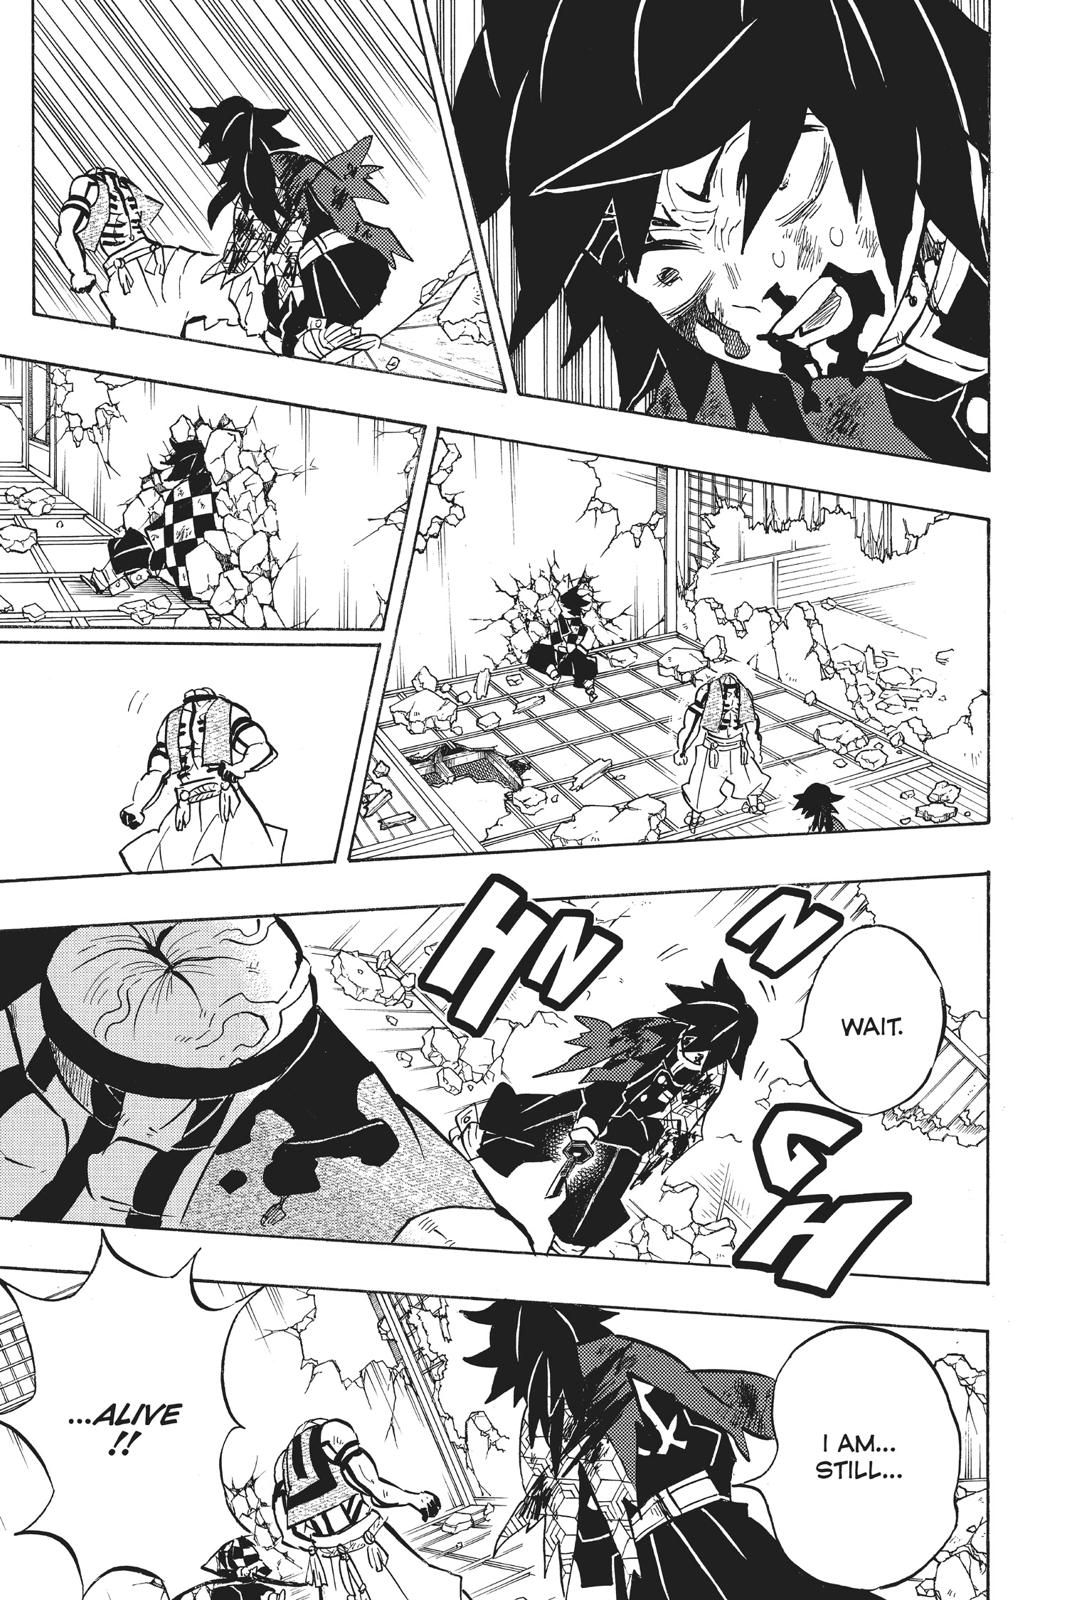 Demon Slayer Manga Manga Chapter - 153 - image 7